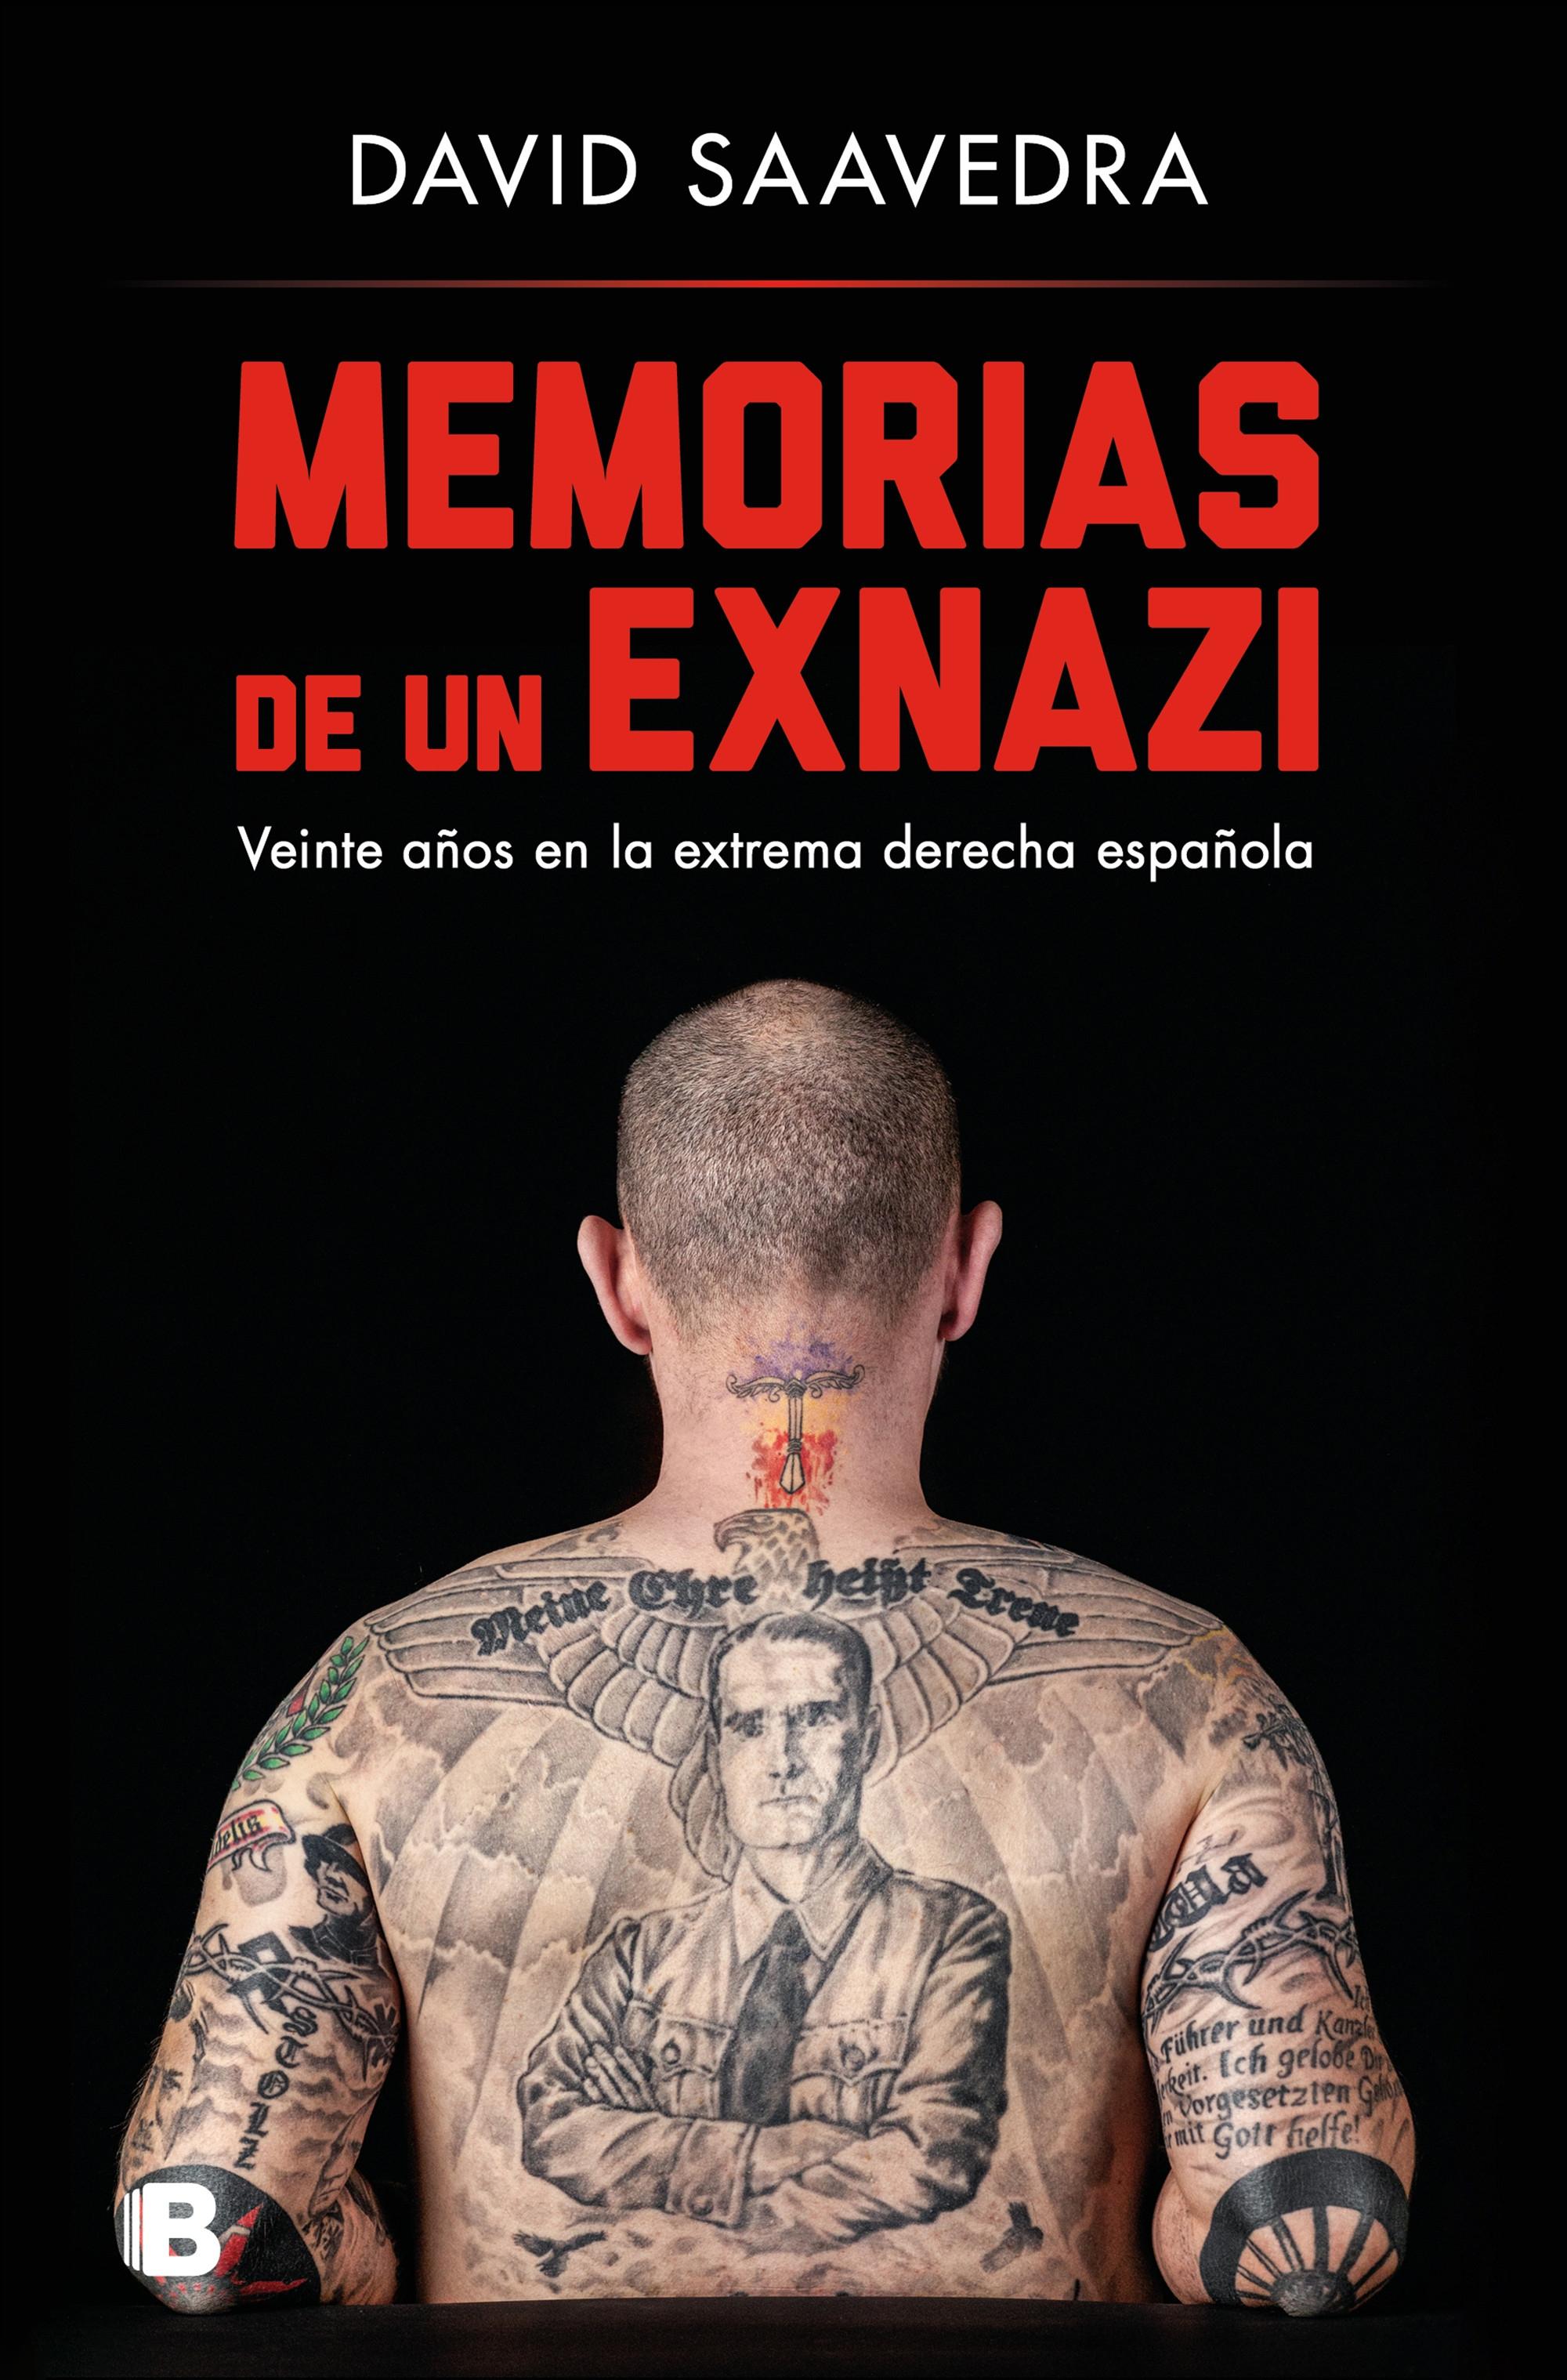 Memorias de un exnazi "Veinte años en la extrema derecha española"